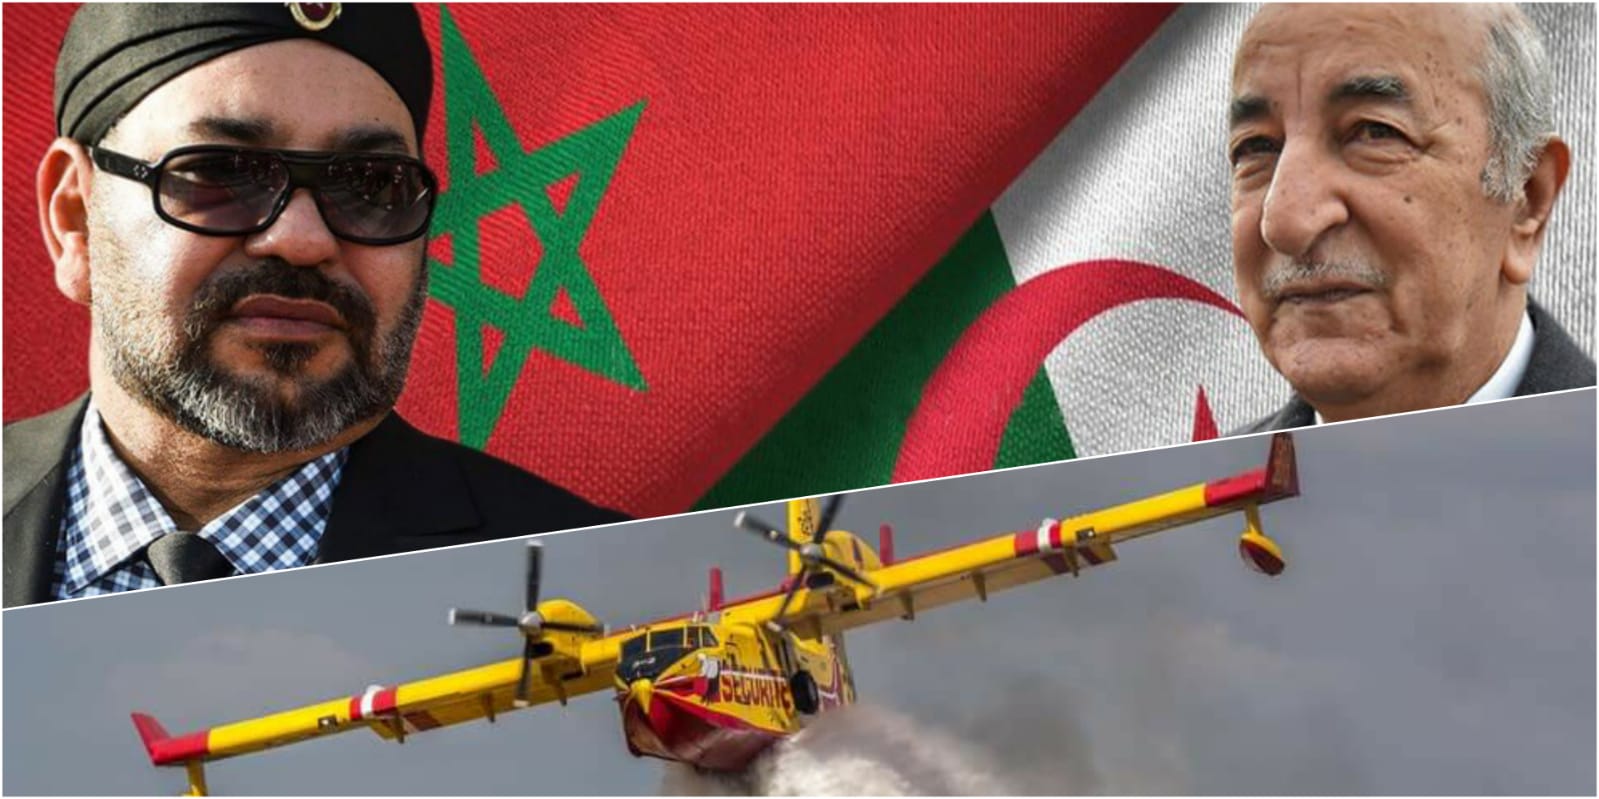 كما هو معروف على المغرب.. الملك محمد السادس يأمر بإرسال طائرتين لمساعدة الجزائر في إخماد الحرائق